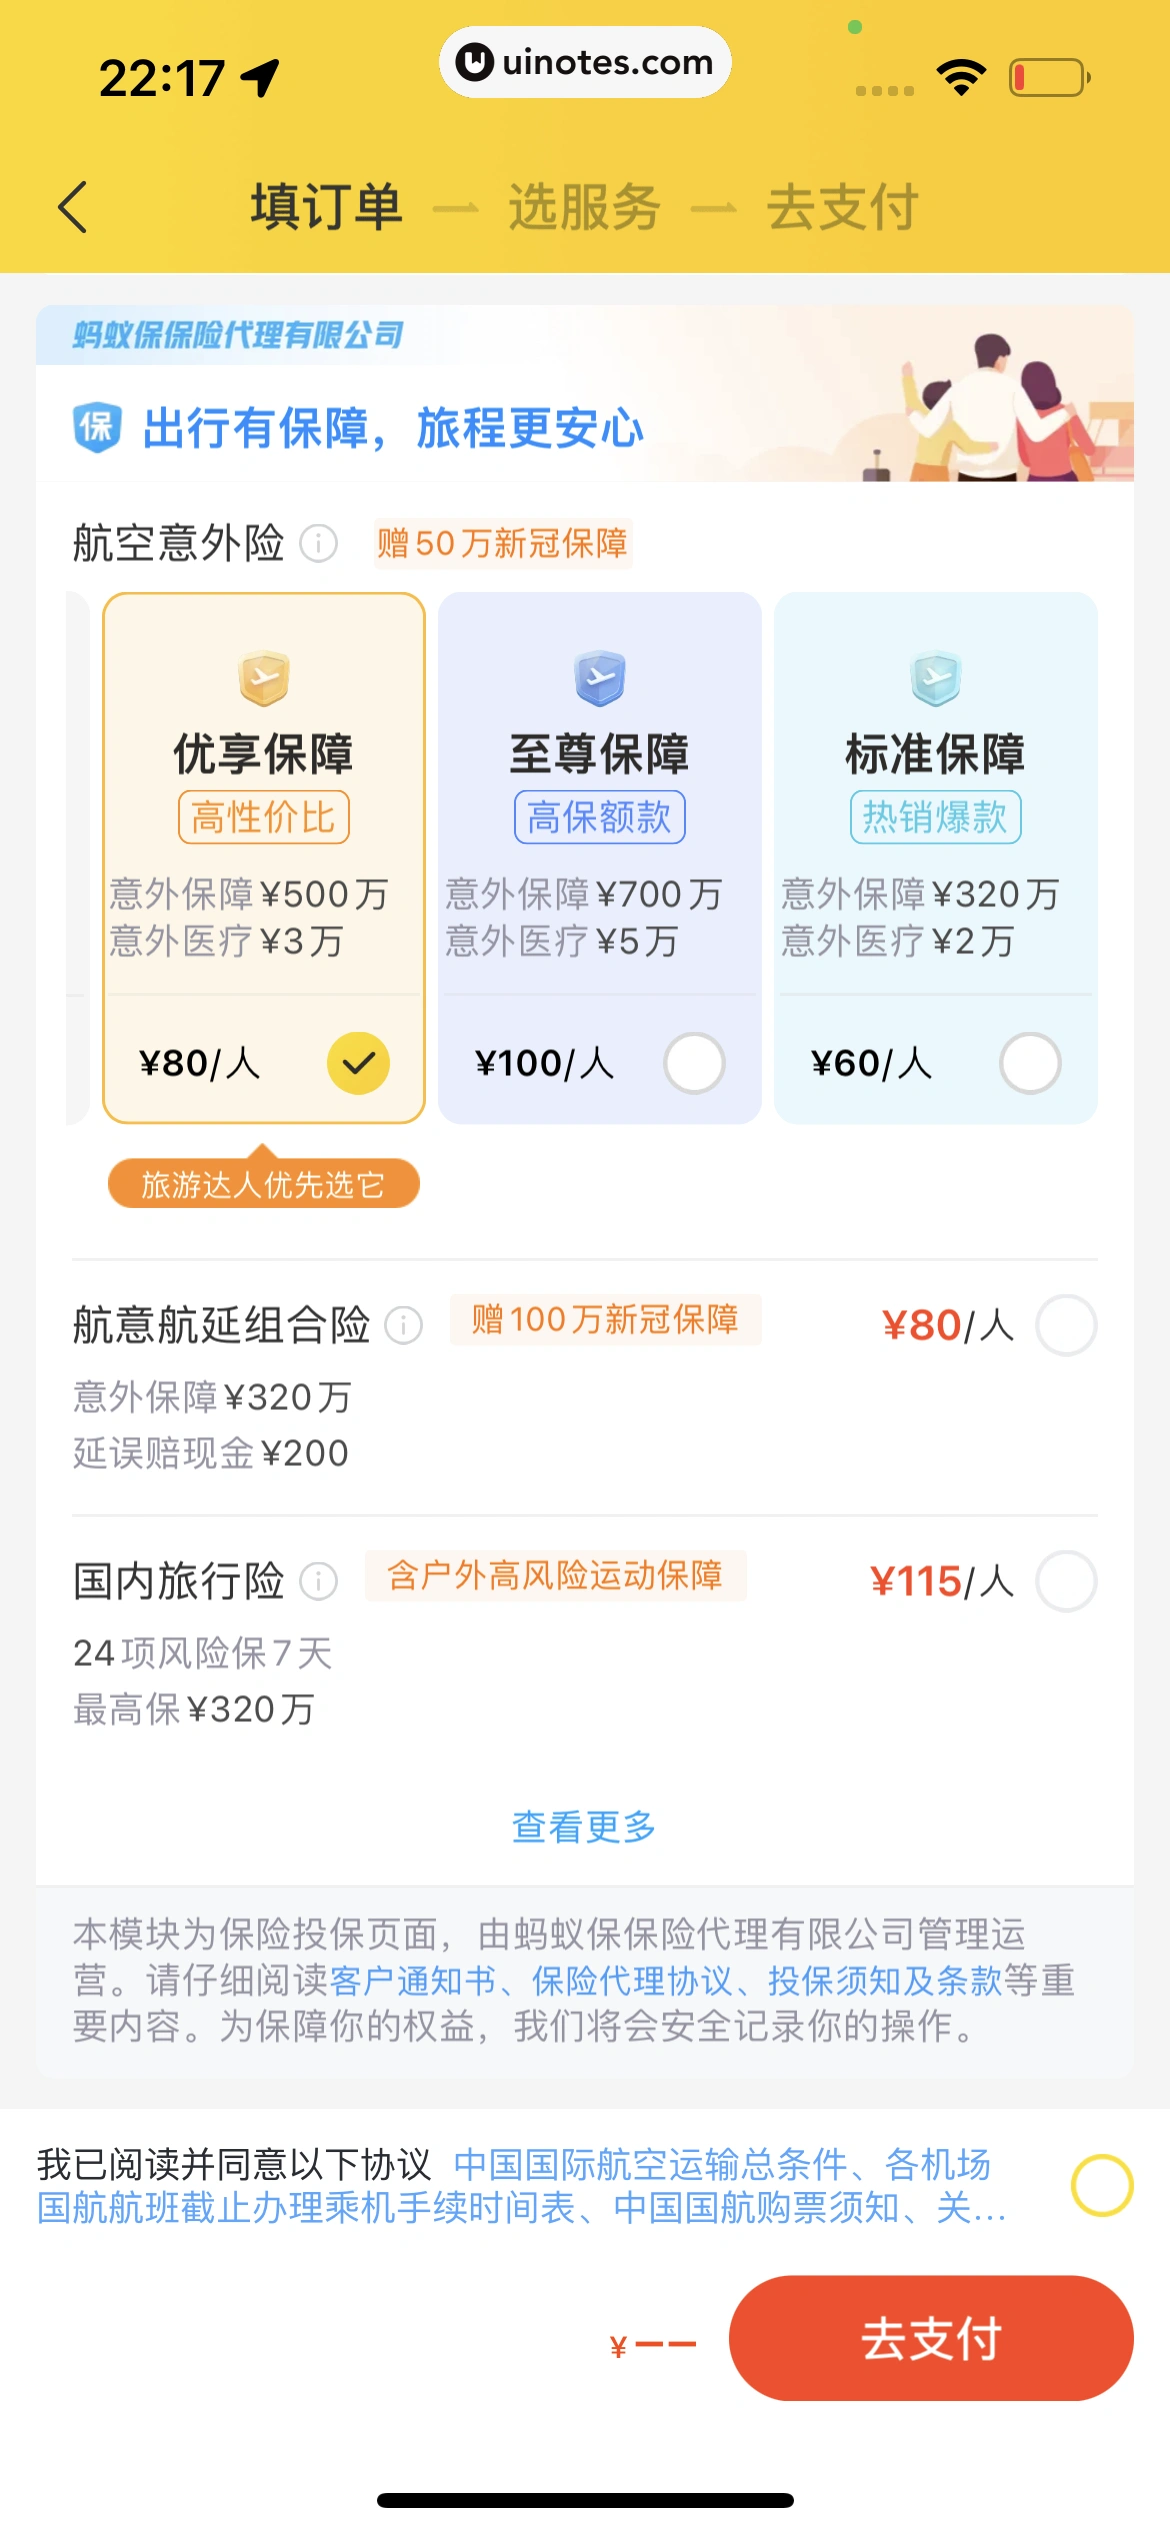 飞猪旅行 App 截图 054 - UI Notes